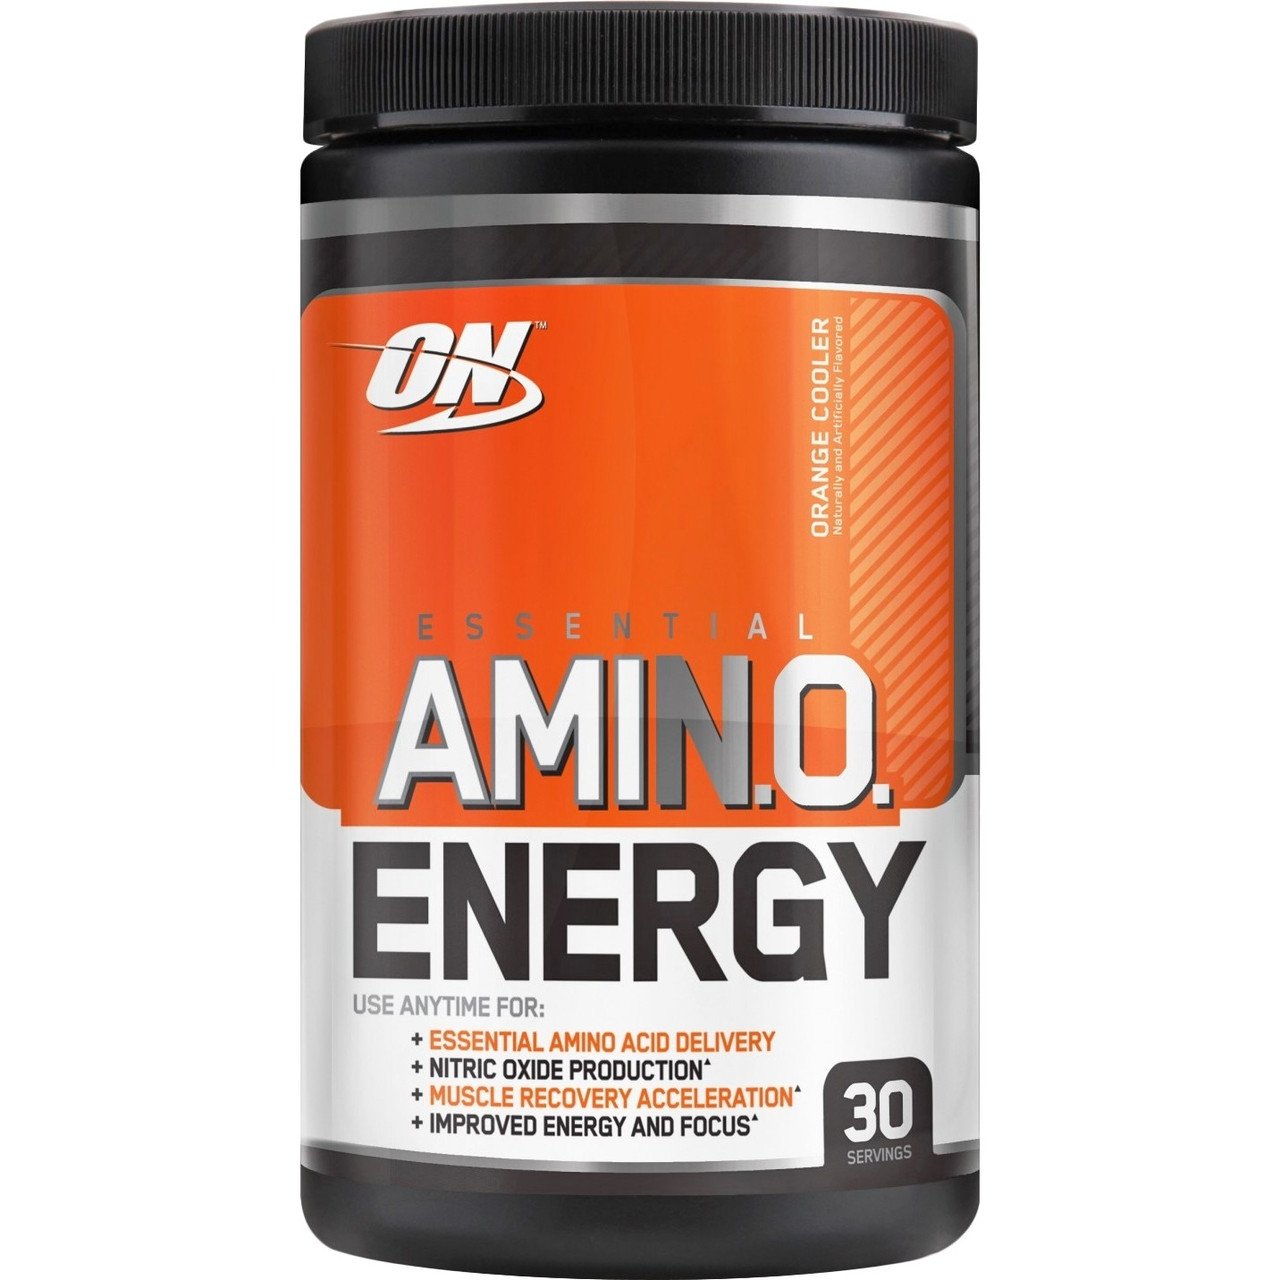 Amino Energy Optimum Nutrition,  мл, Optimum Nutrition. Послетренировочный комплекс. Восстановление 